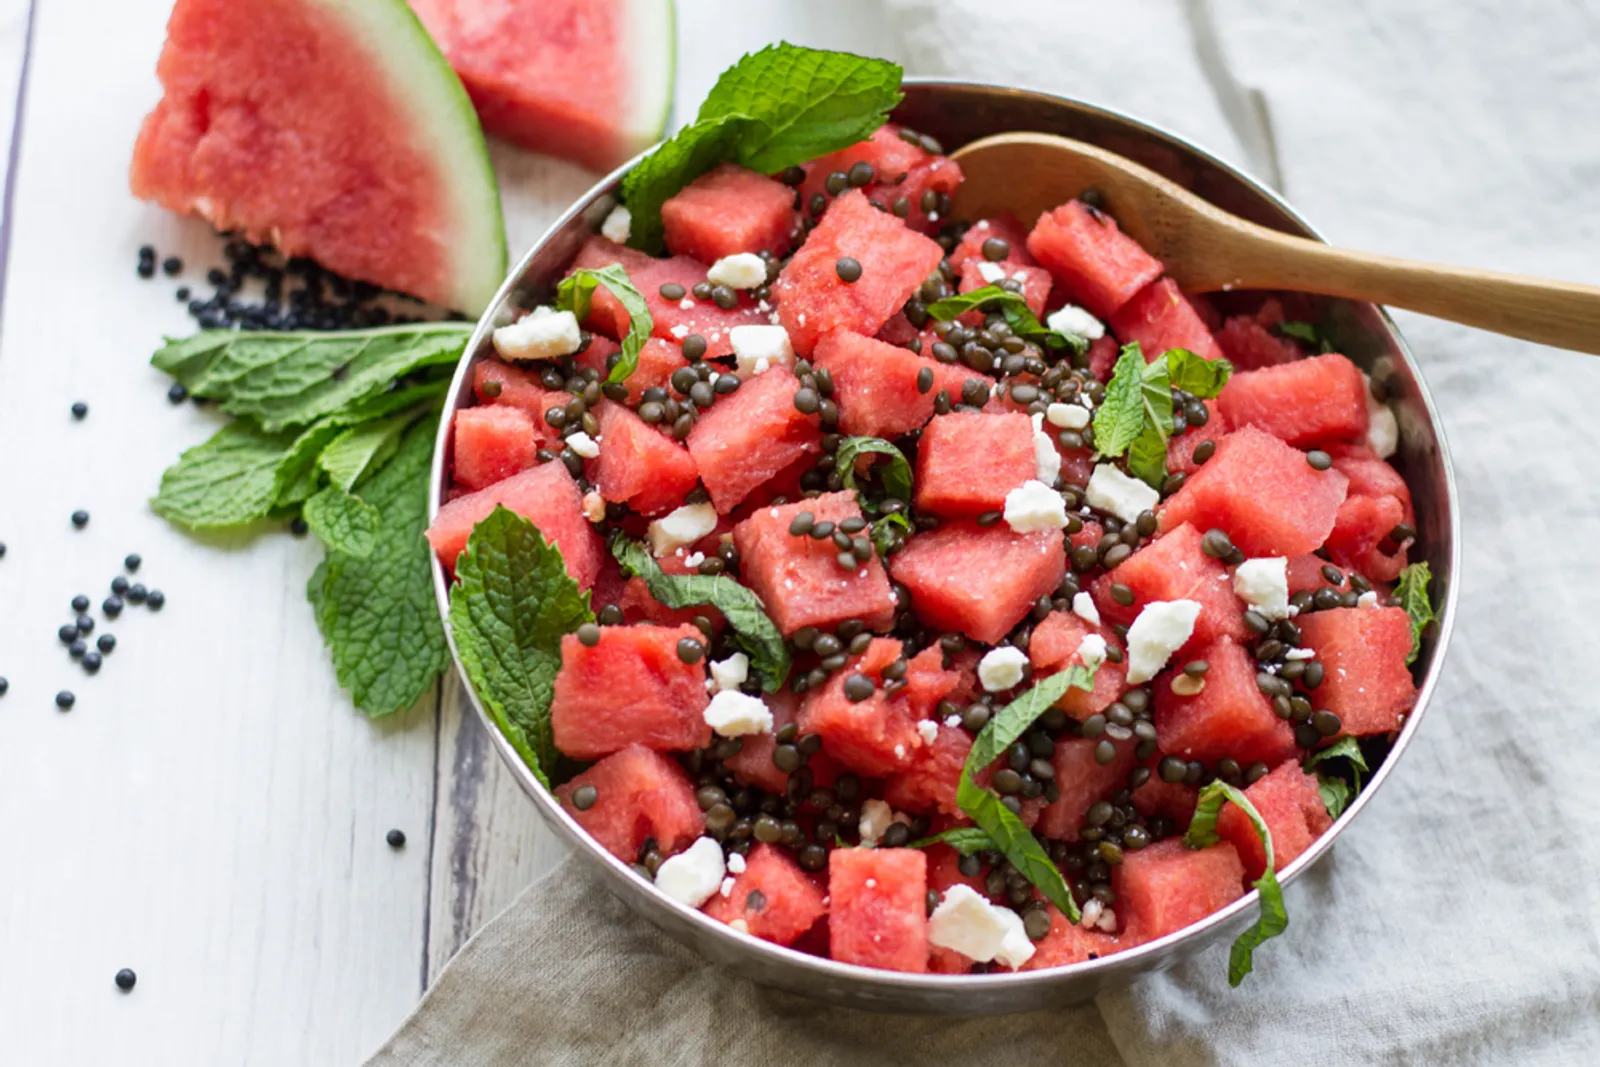 Resep Praktis Membuat Watermelon Salad Yang Sehat dan Menyegarkan